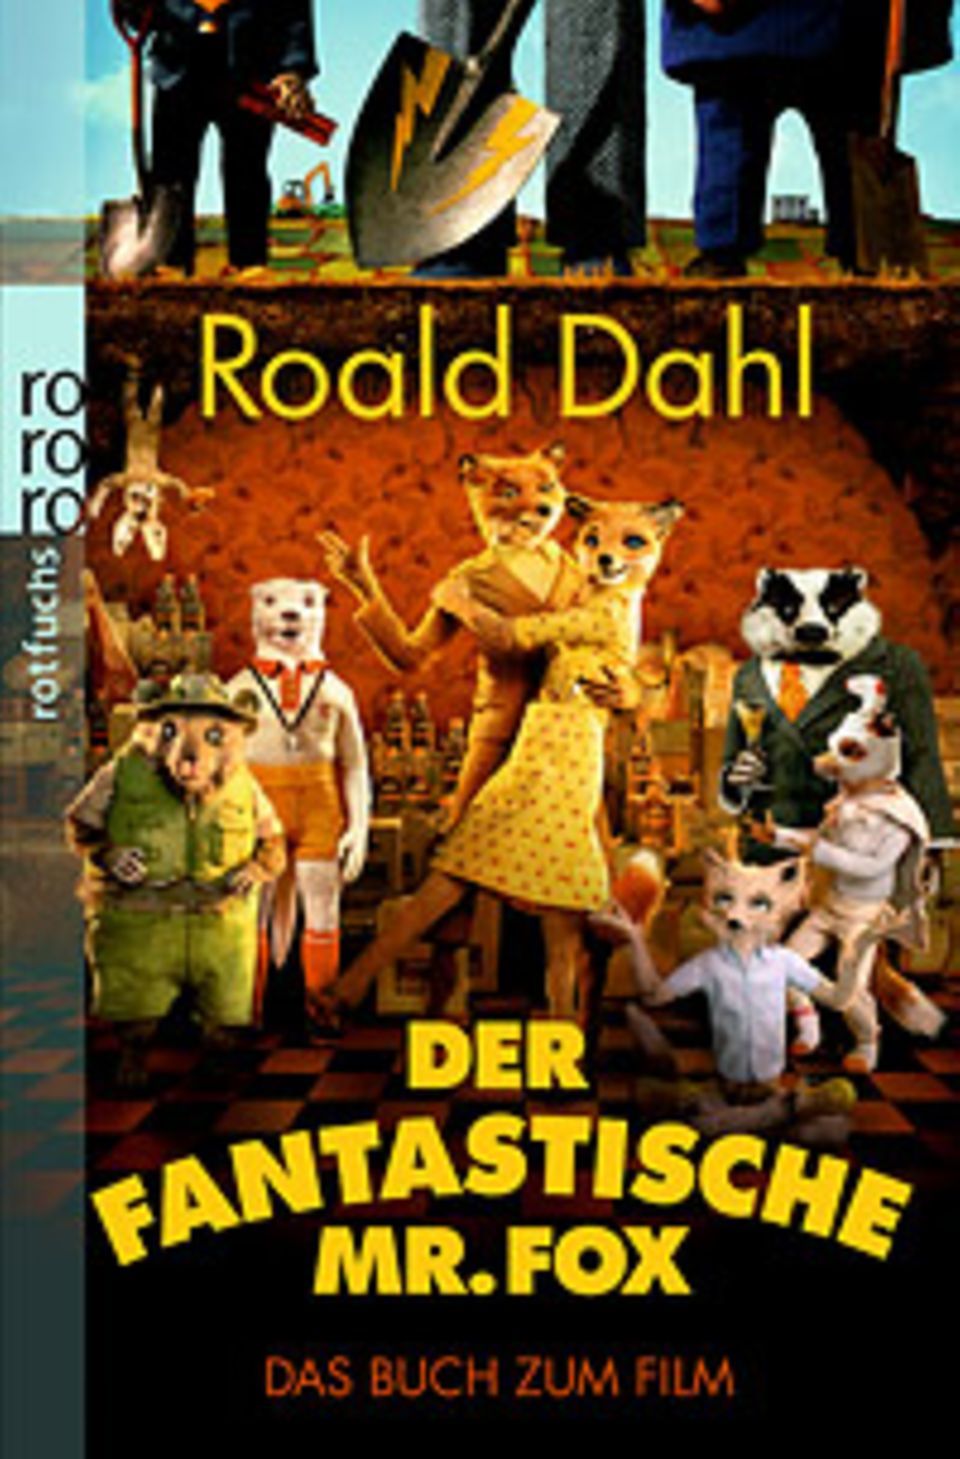 Cover von "Der fantastische Mr. Fox"